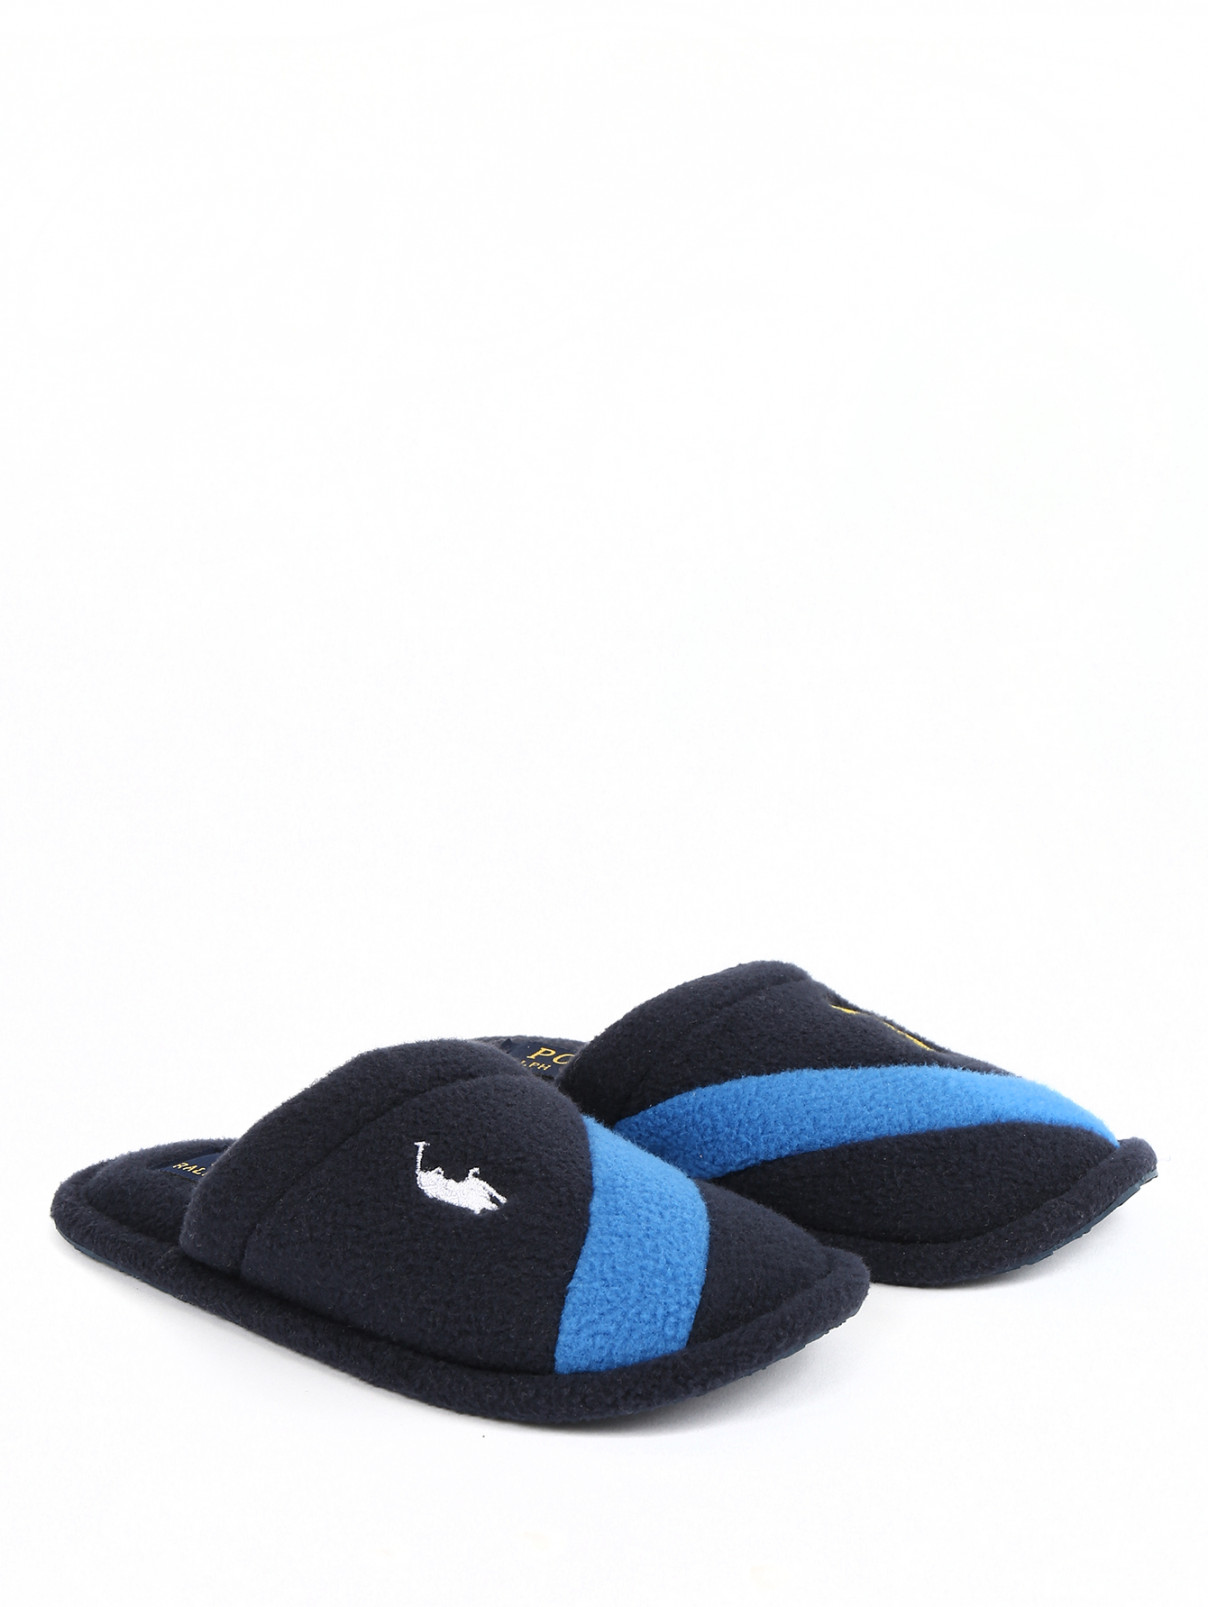 Тапочки с контрастными вставками и вышивкой Ralph Lauren  –  Общий вид  – Цвет:  Синий